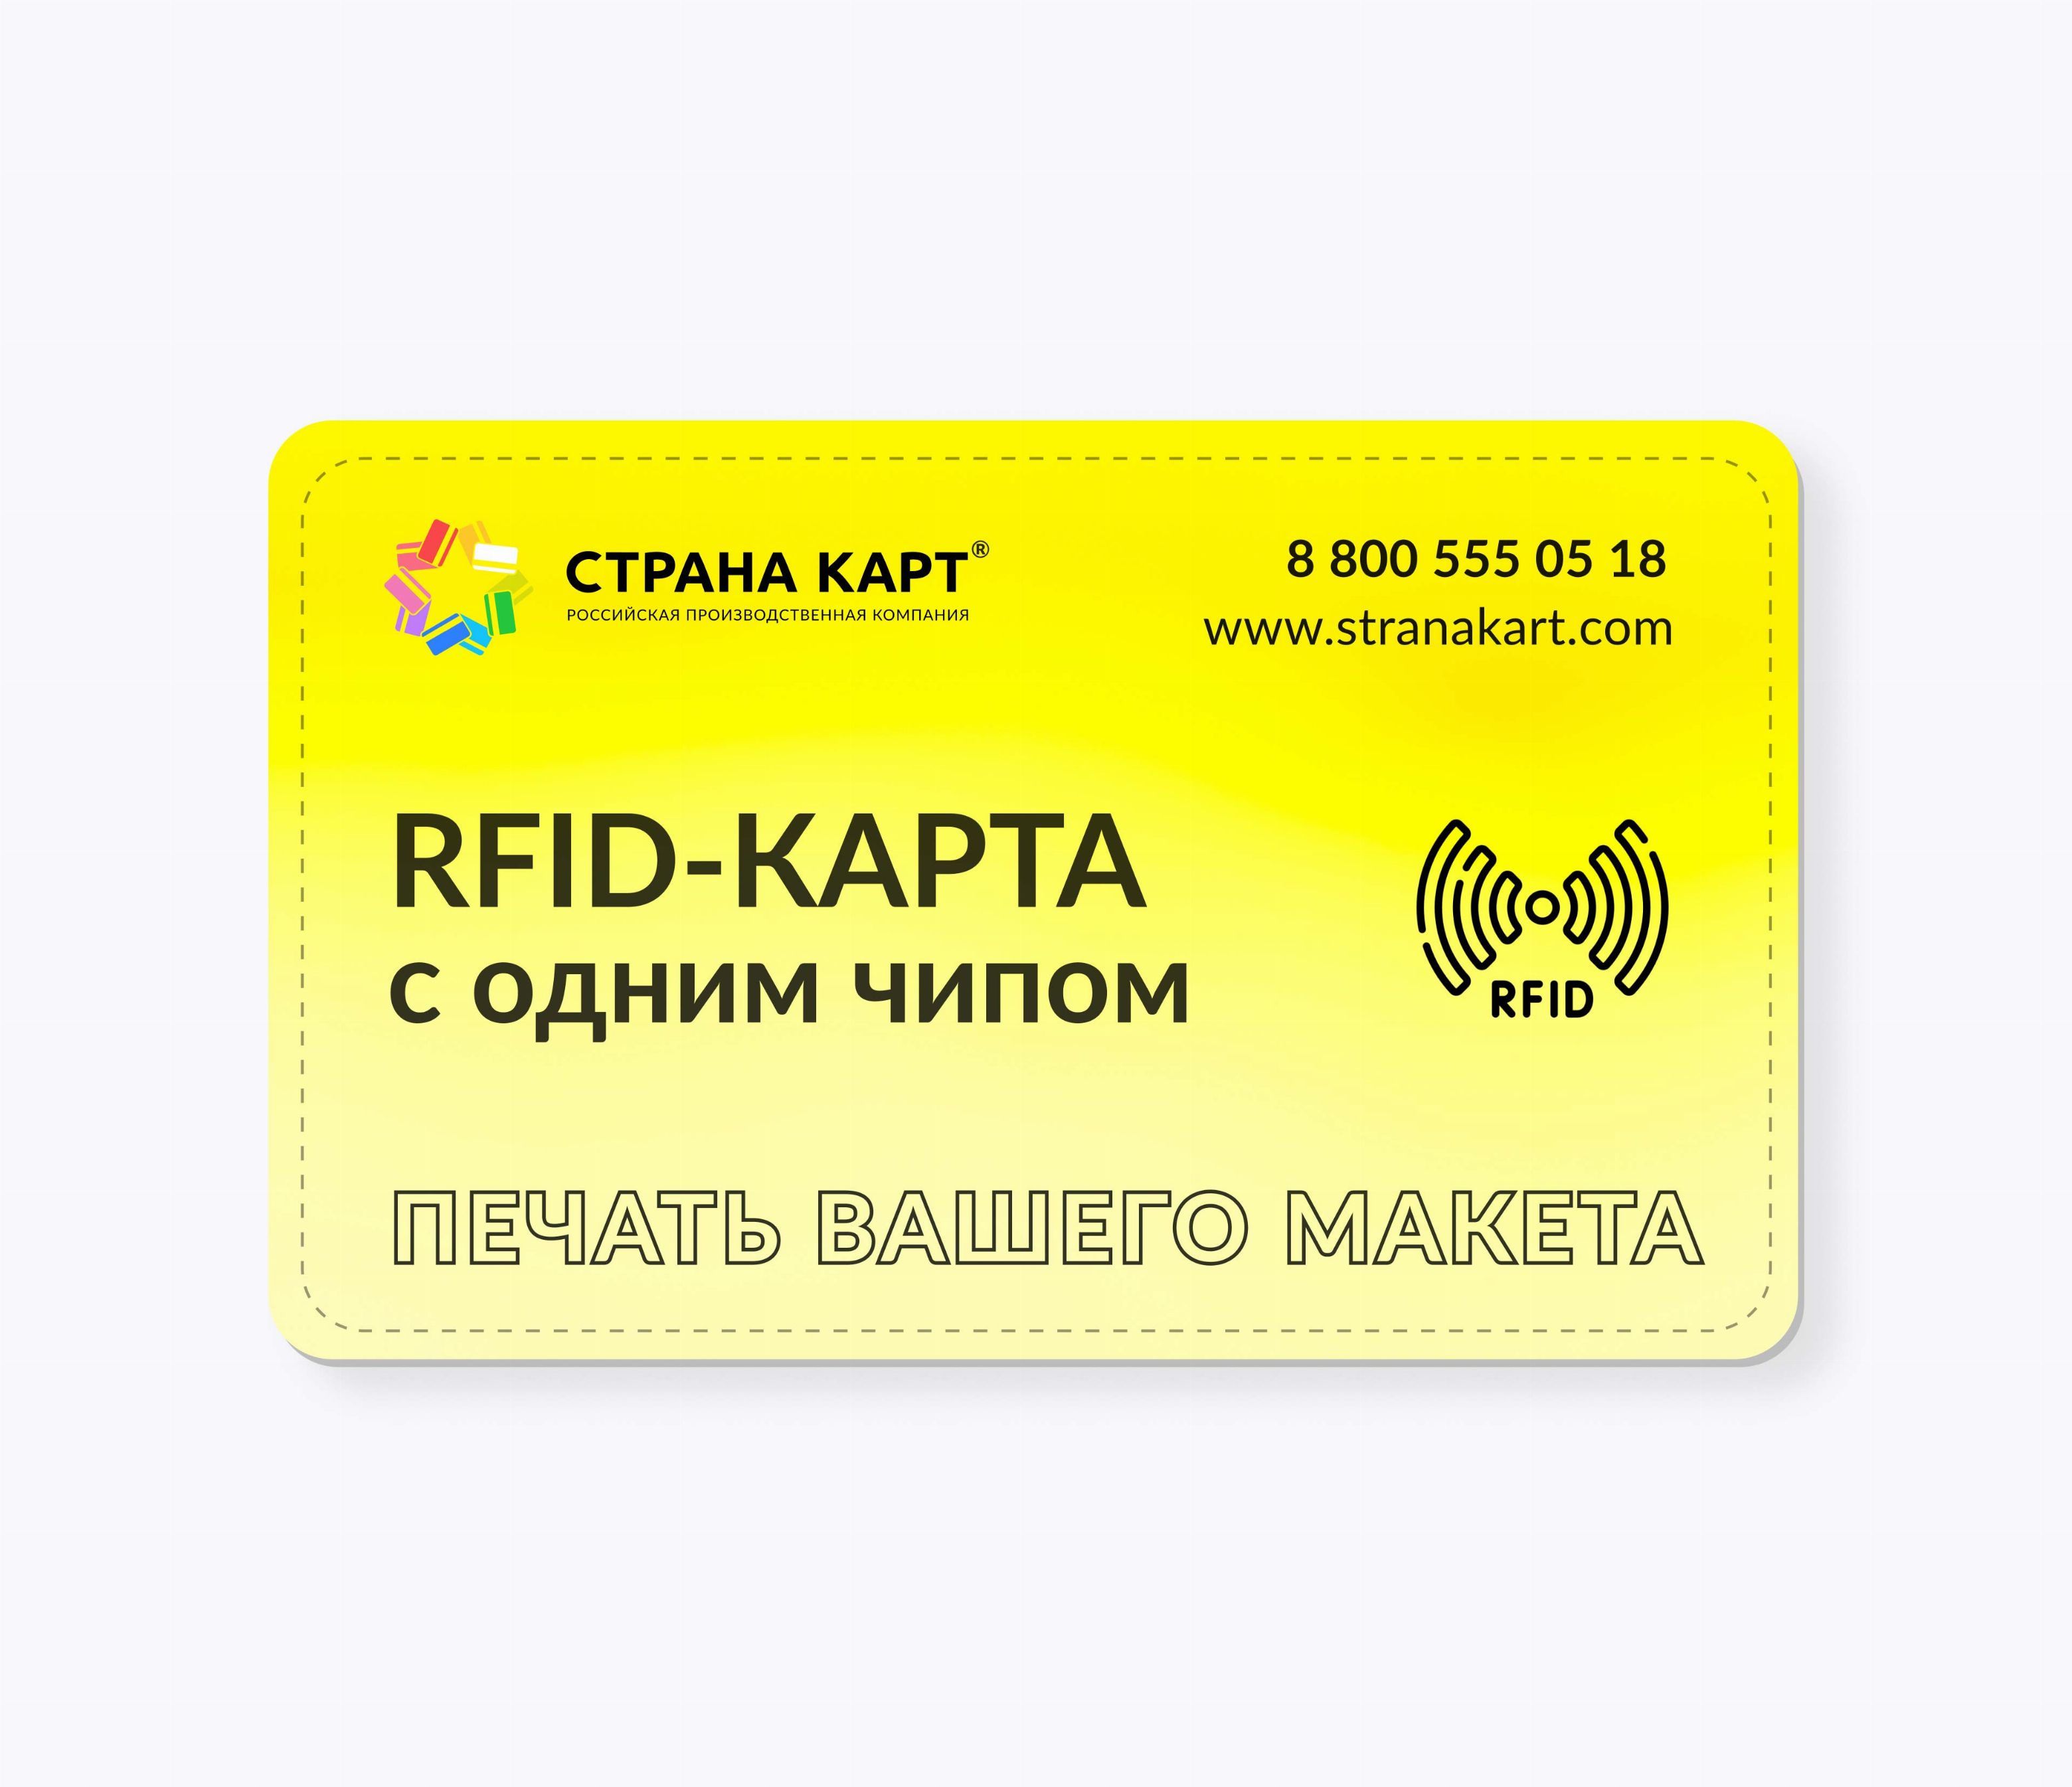 RFID-карты с чипом NXP ICODE SLIX2 печать вашего макета RFID-карты с чипом NXP ICODE SLIX 2